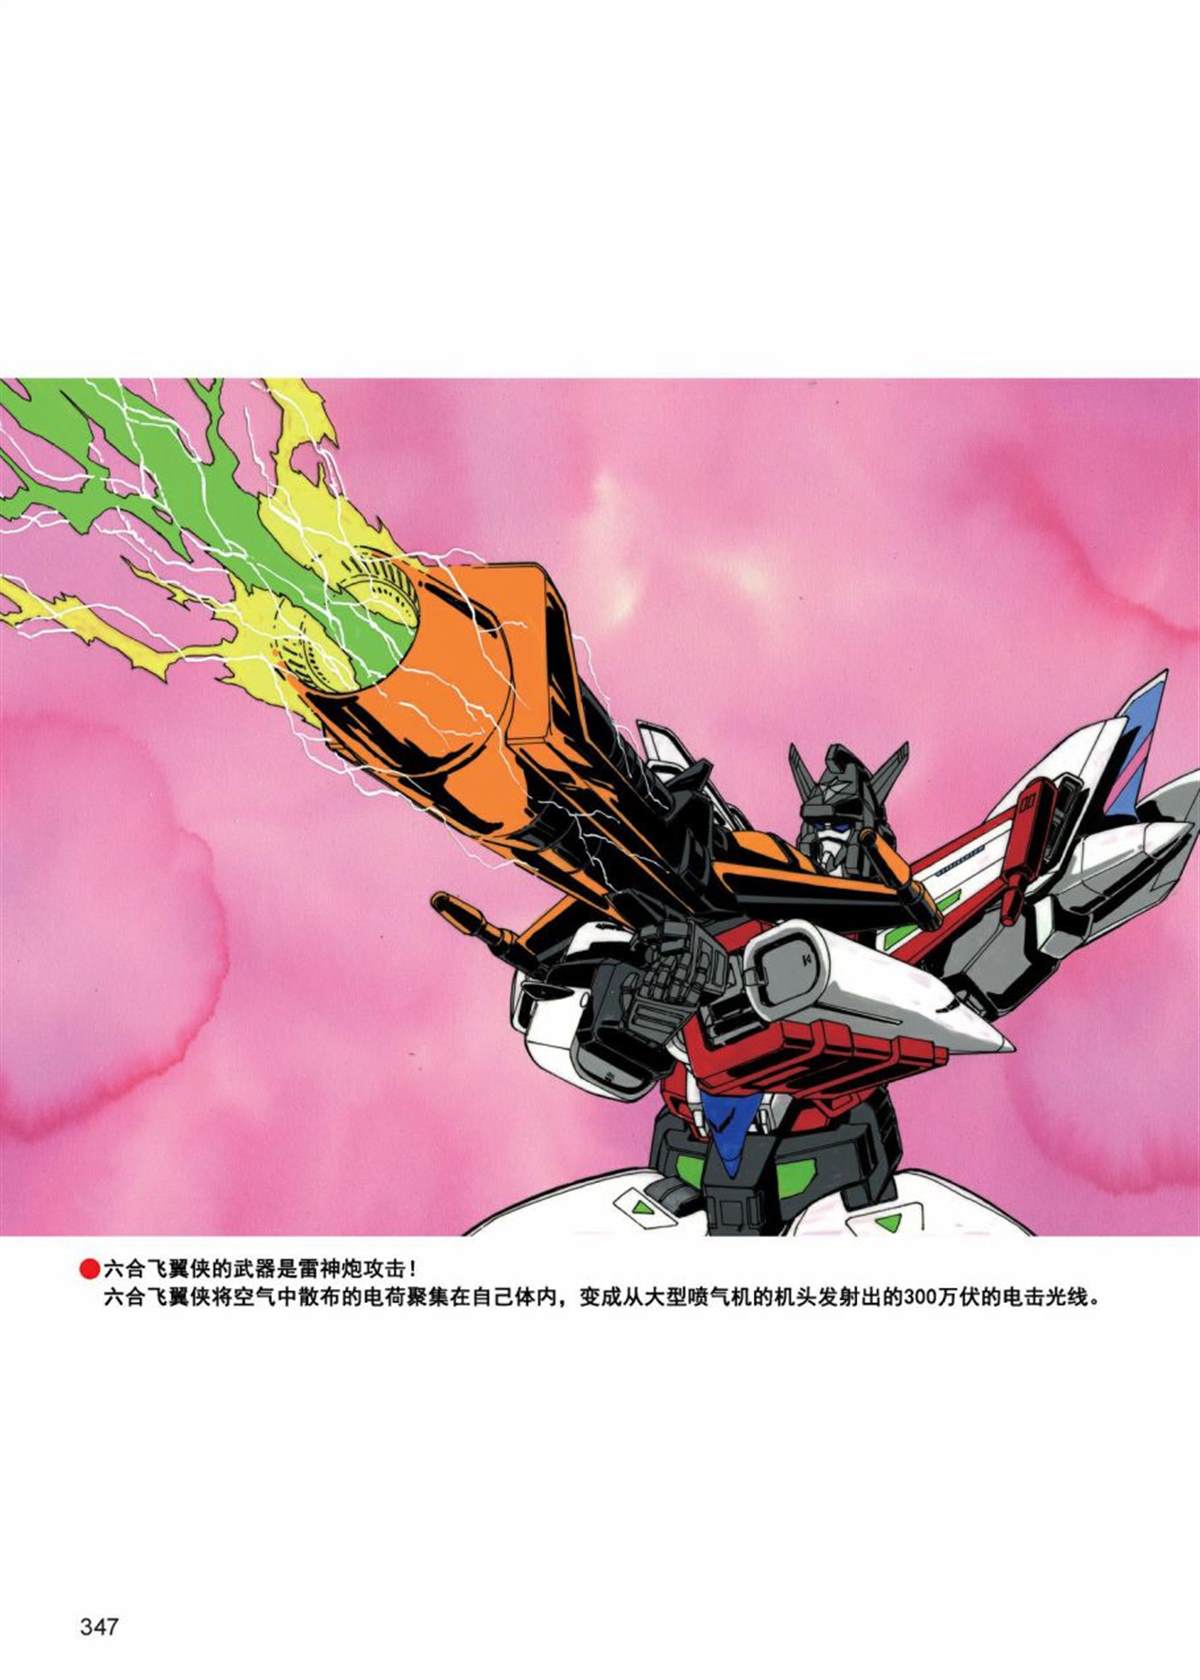 變形金剛日版G1雜誌插畫 - 《戰鬥吧！超機械生命體變形金剛：合體大作戰》 - 2